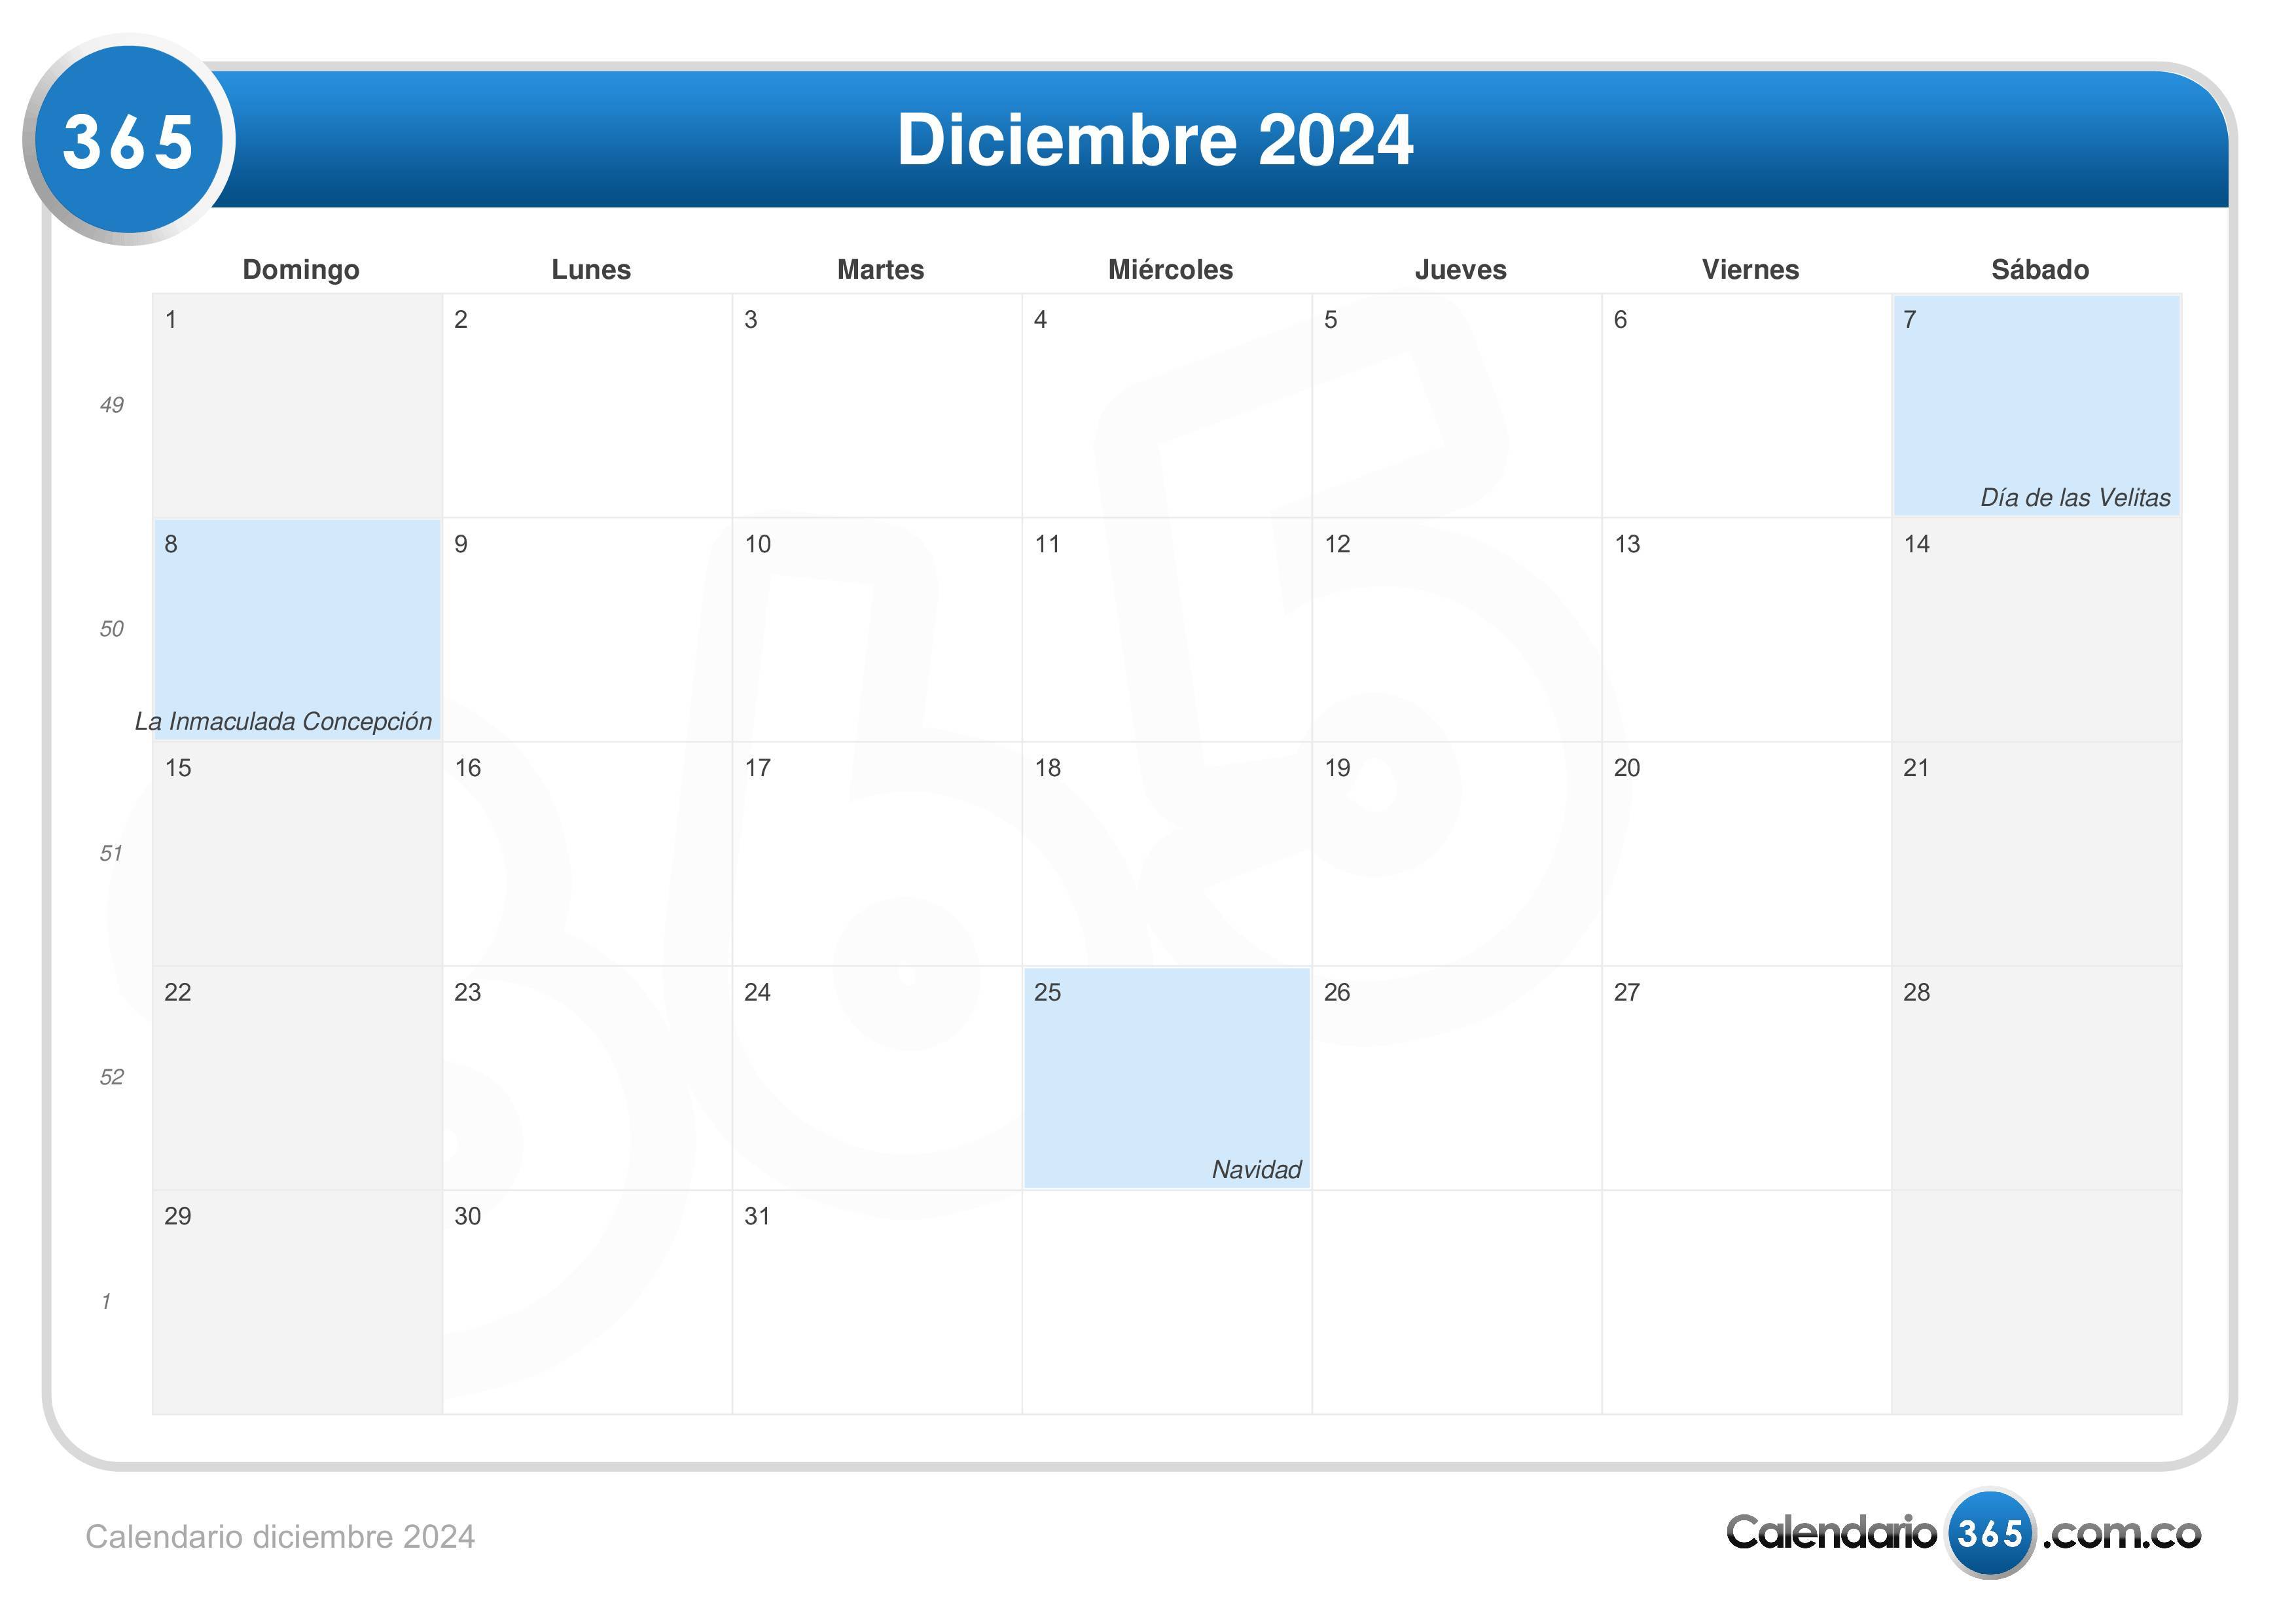 Calendario diciembre 2024